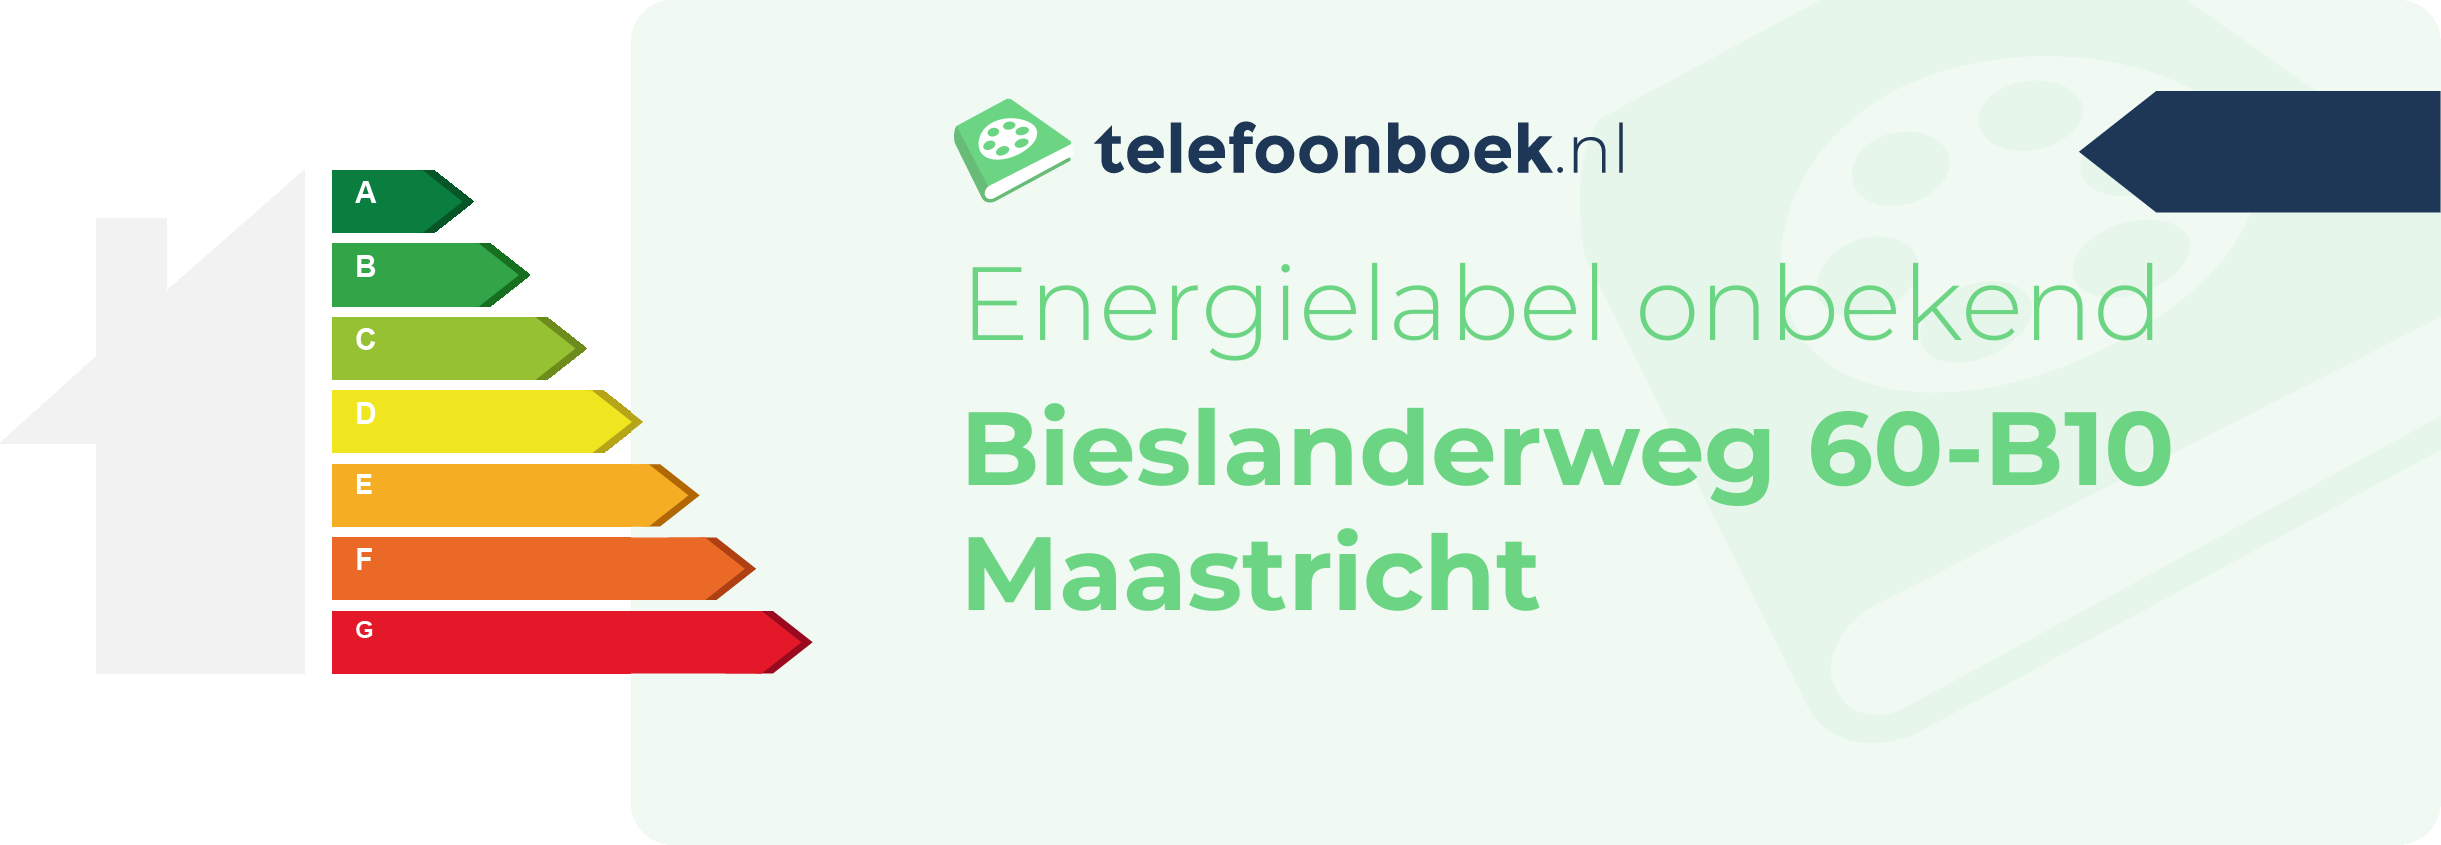 Energielabel Bieslanderweg 60-B10 Maastricht